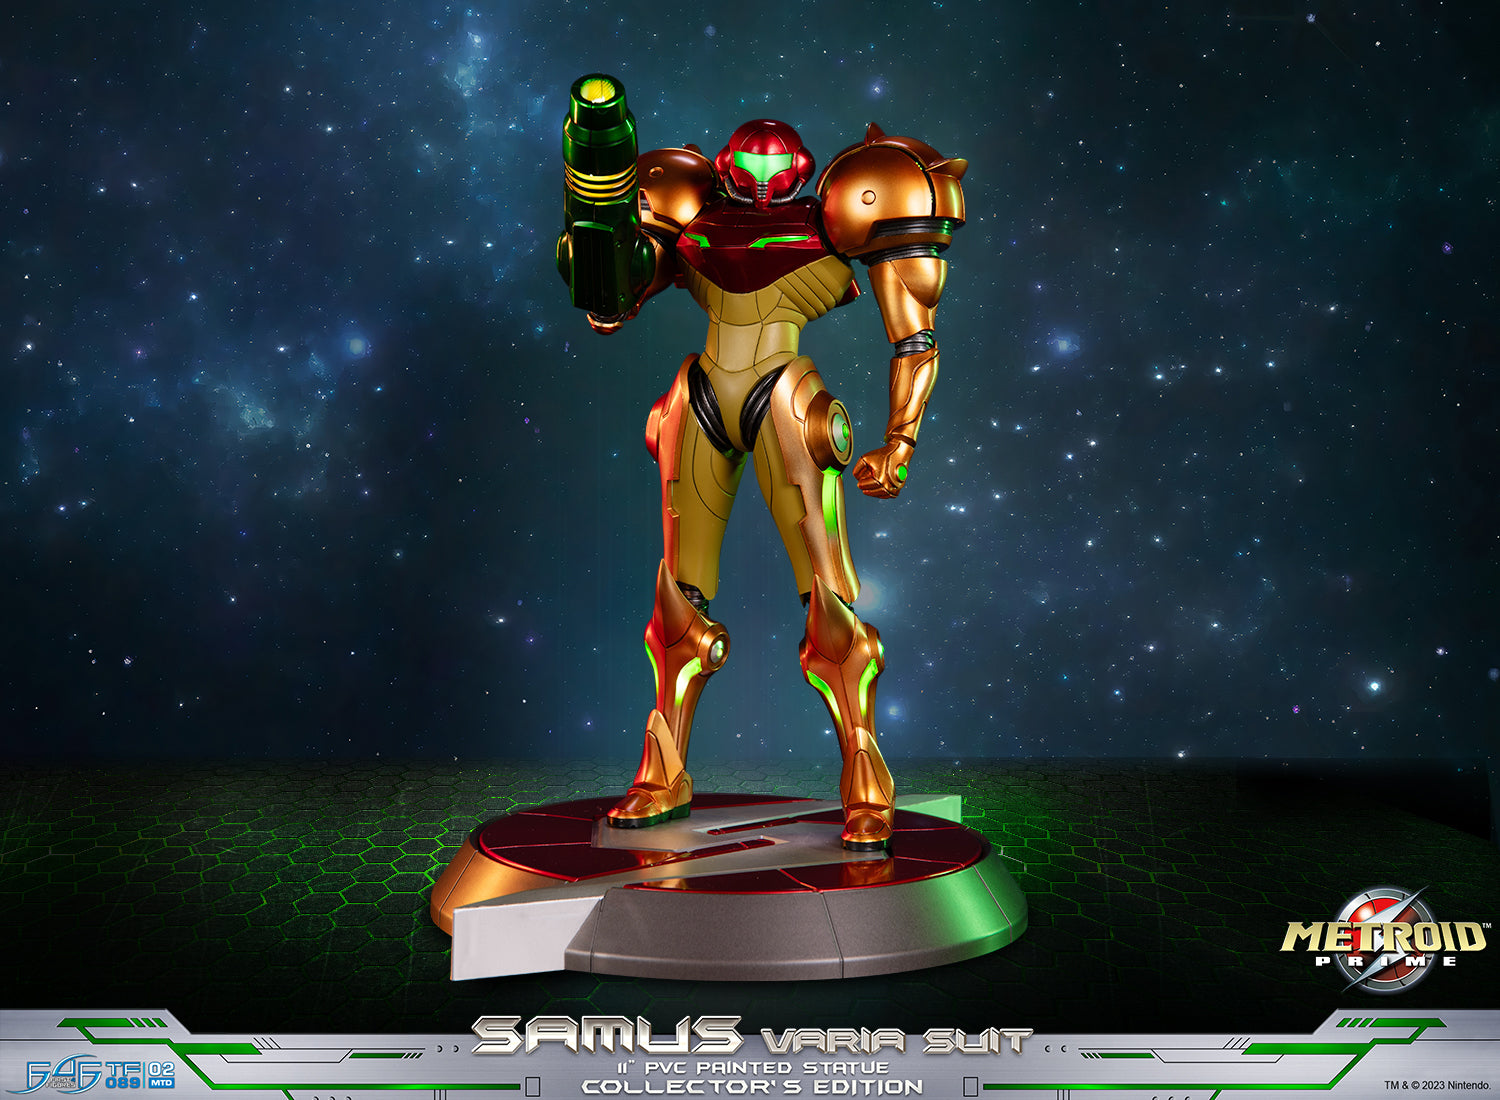 First 4 Figures: Metroid Prime - Samus Traje Varia Varia Edicion Coleccionista